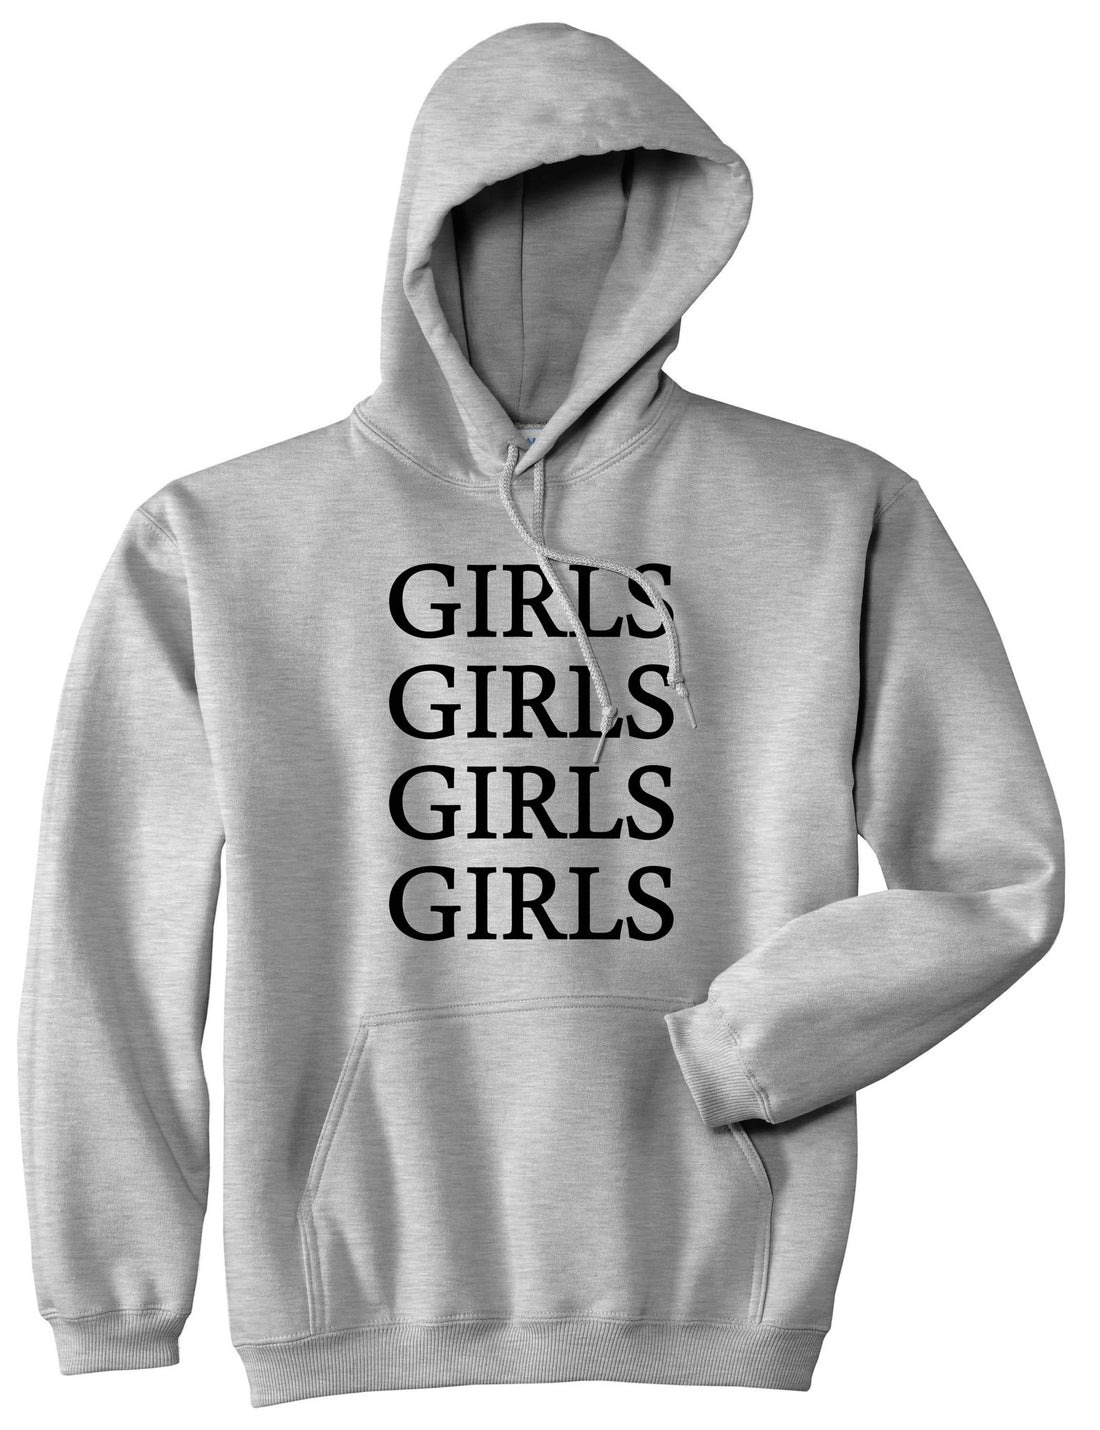 Girls Girls Girls Pullover Hoodie Hoody in Grey by Kings Of NY